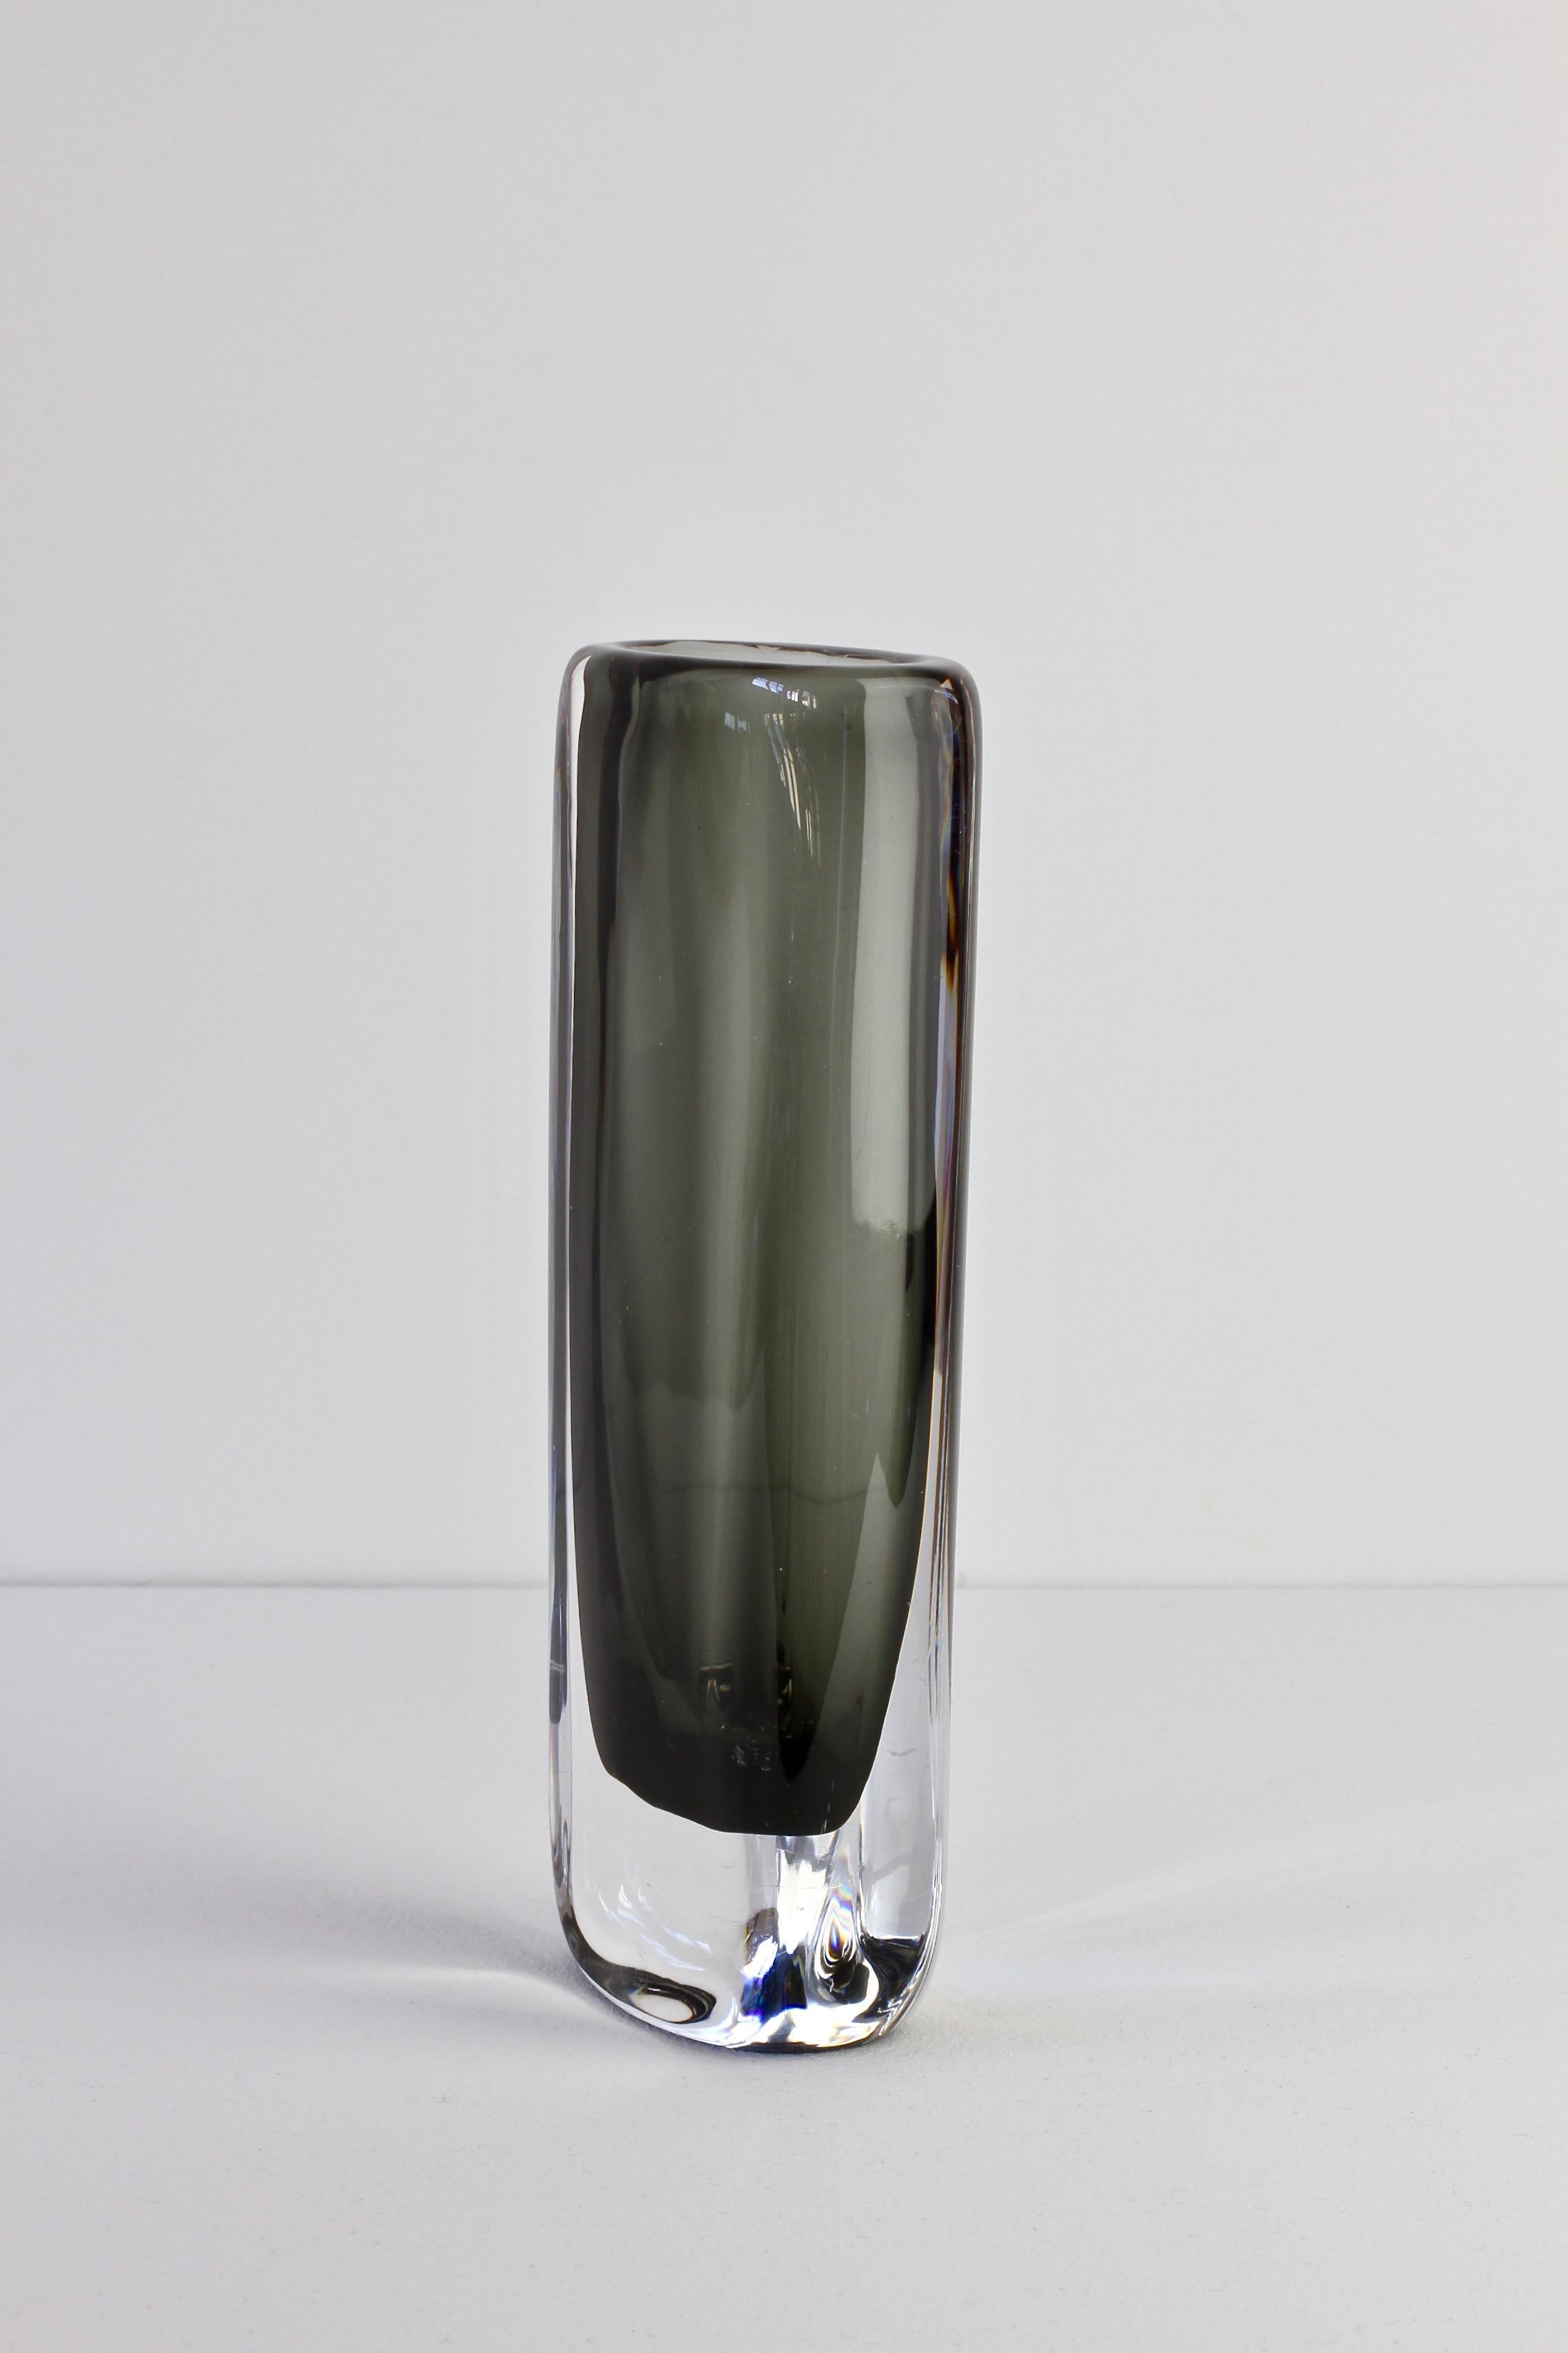 Tall 1950s Sommerso 'Dusk' Vase Signed by Nils Landberg for Orrefors Glass 1